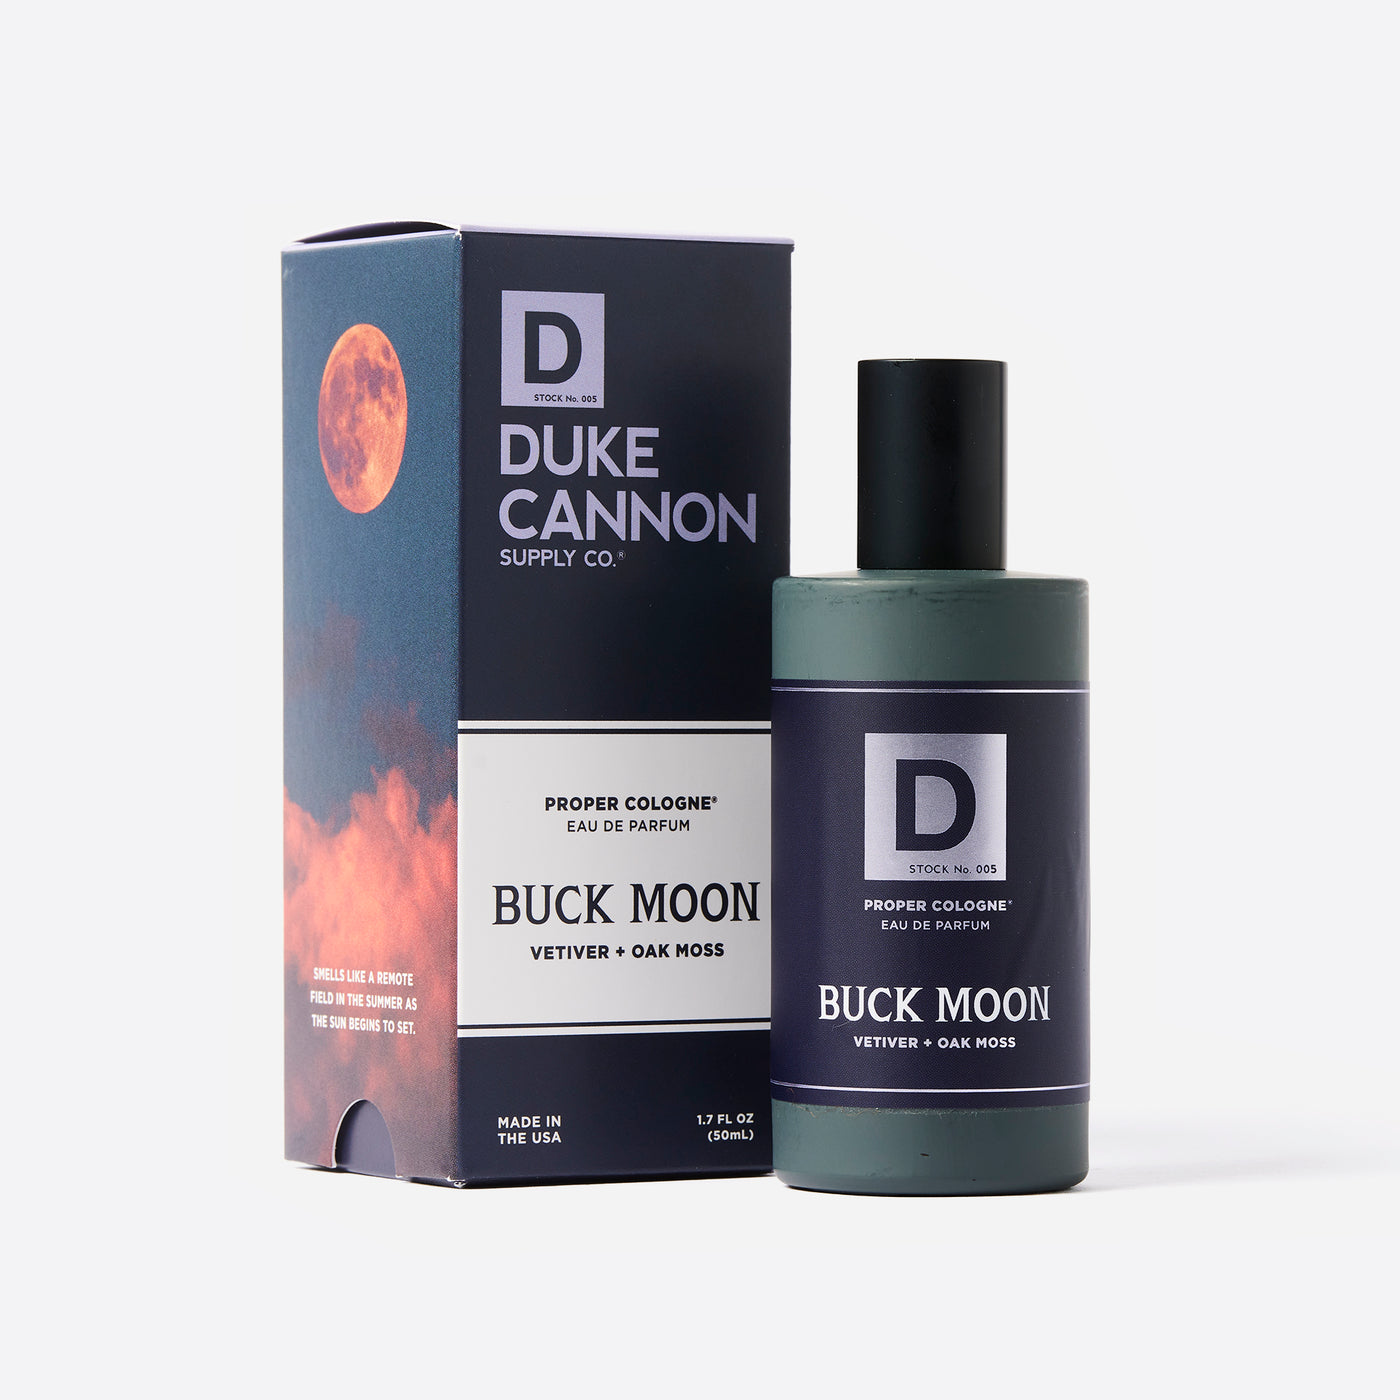 Duke Cannon Proper Cologne in Buck Moon 